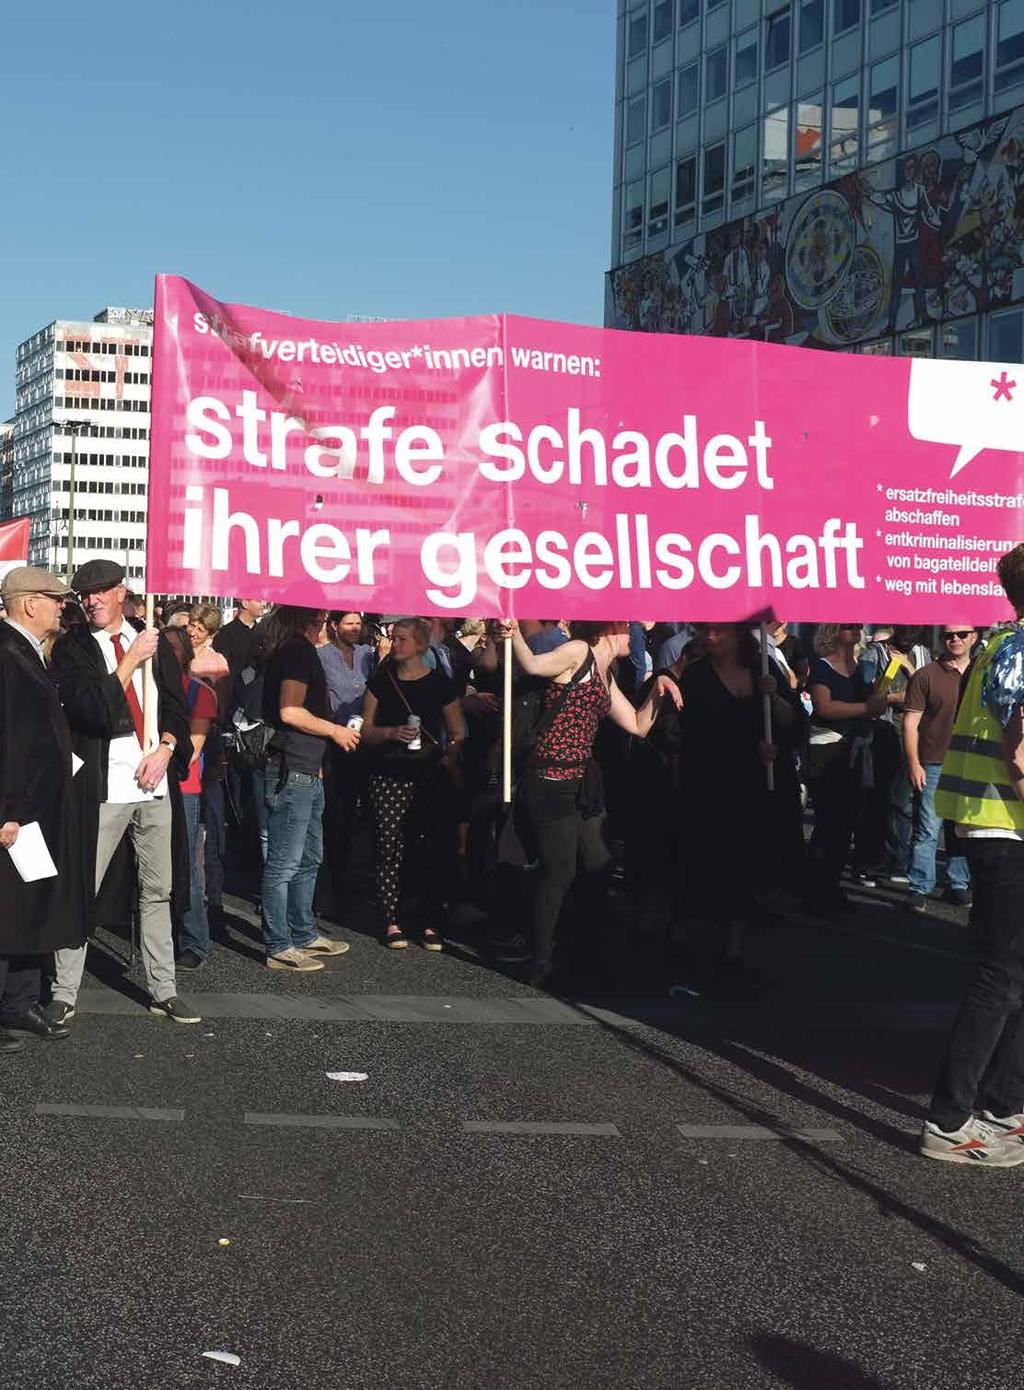 Stefan Conen Bild: Anwält*innenblock der Demonstration #unteilbar. Am 13. Oktober 2018 fand in Berlin die Demonstration #unteilbar statt, an der bis zu 240.000 Menschen teilnahmen.